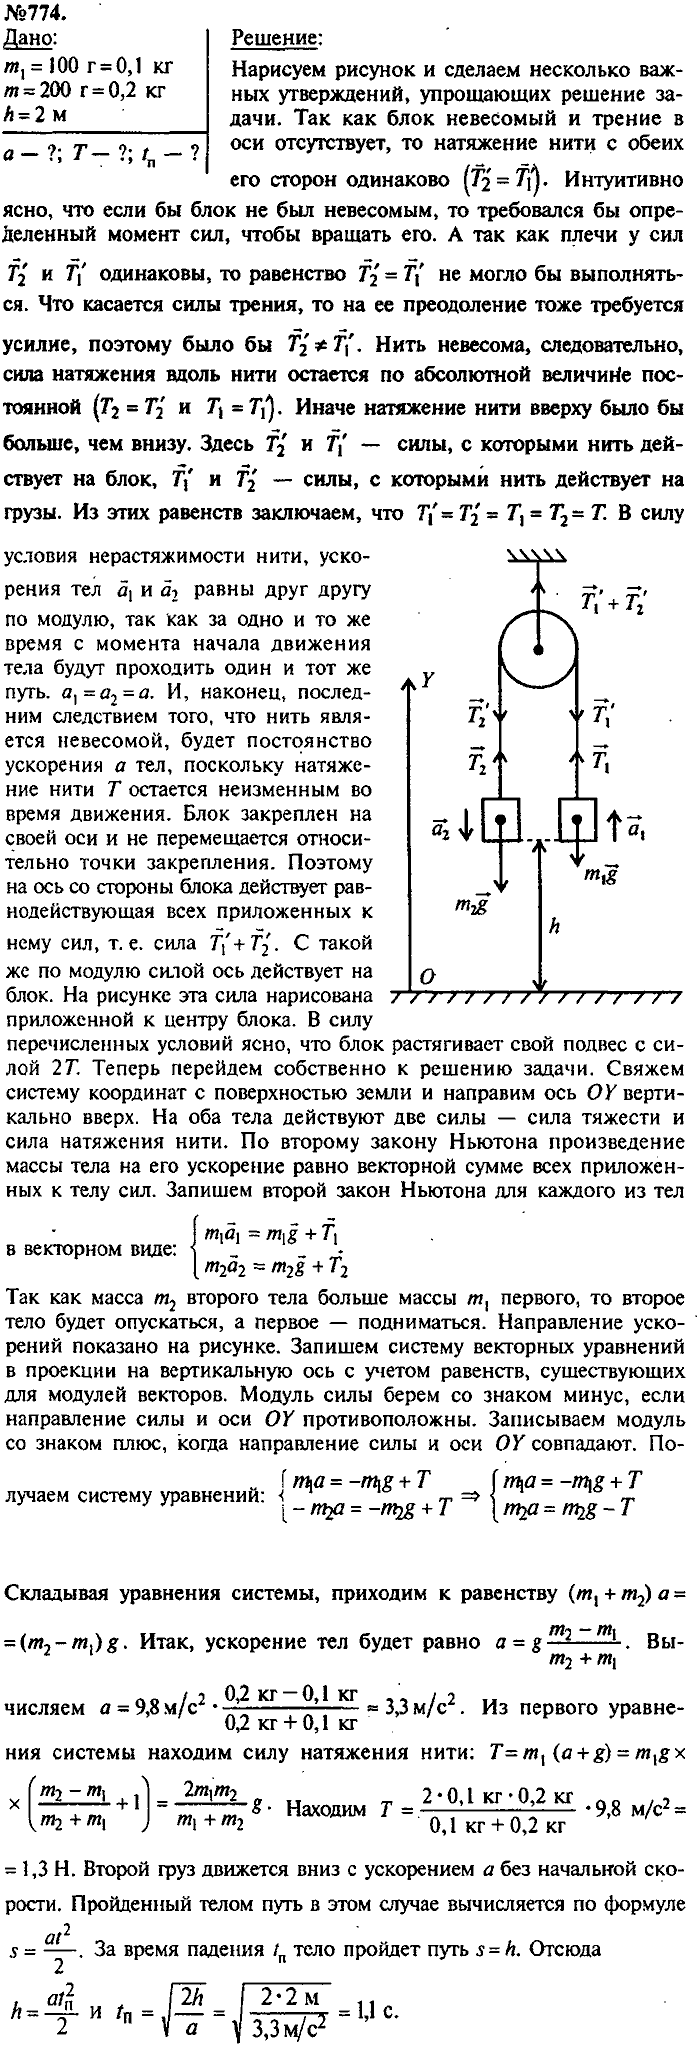 Сборник задач, 9 класс, Лукашик, Иванова, 2001 - 2011, задача: 774